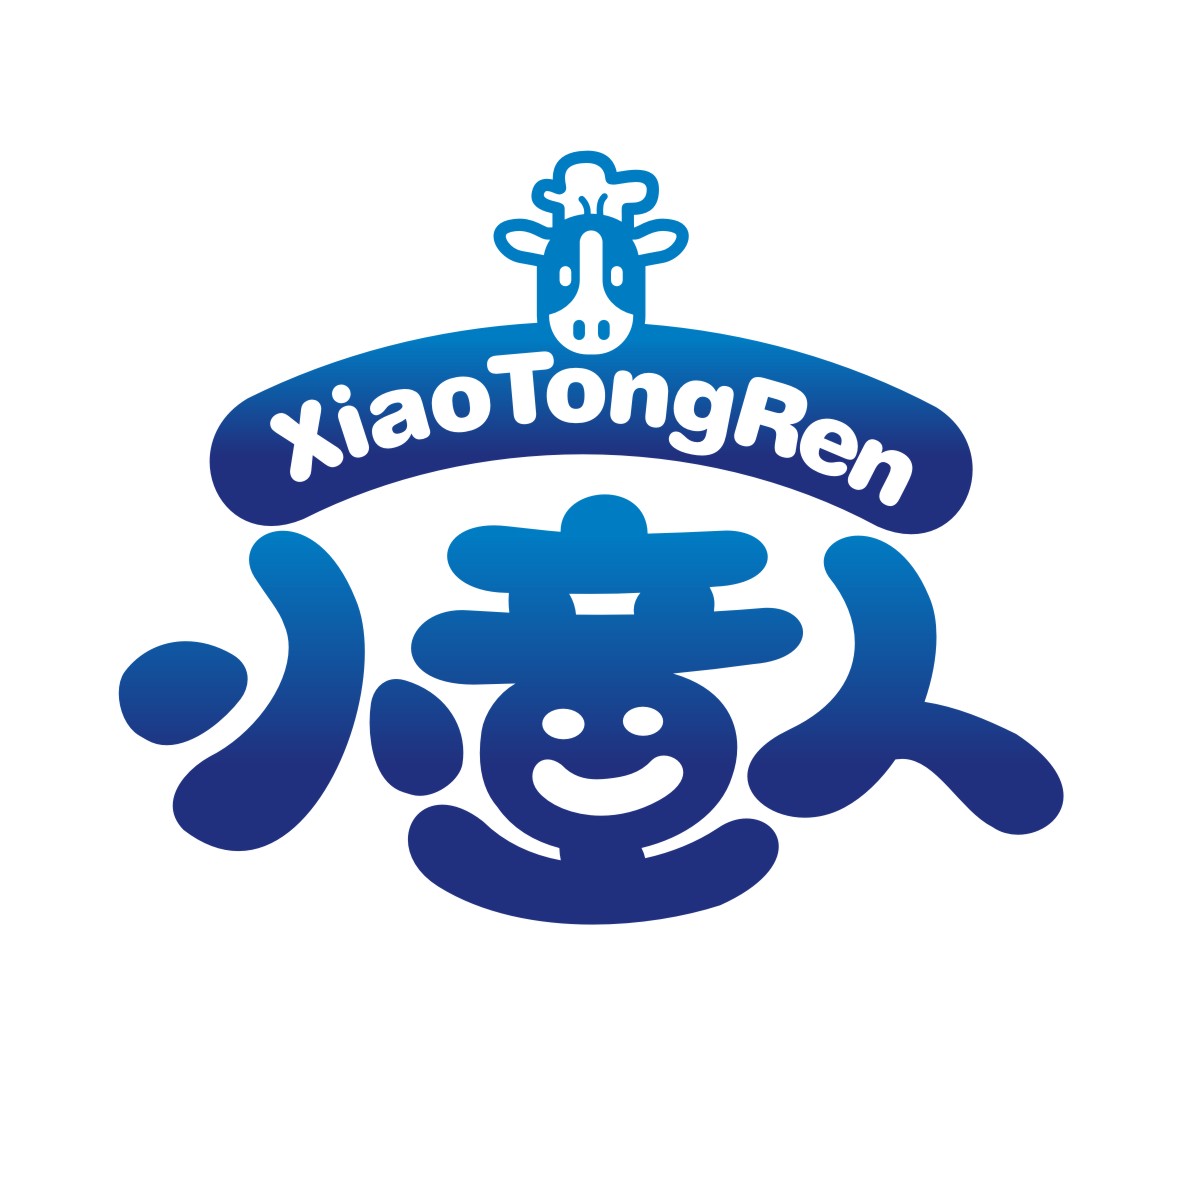 广州品翰文化发展有限公司商标小人 XIAO TONG REN（29类）商标转让流程及费用